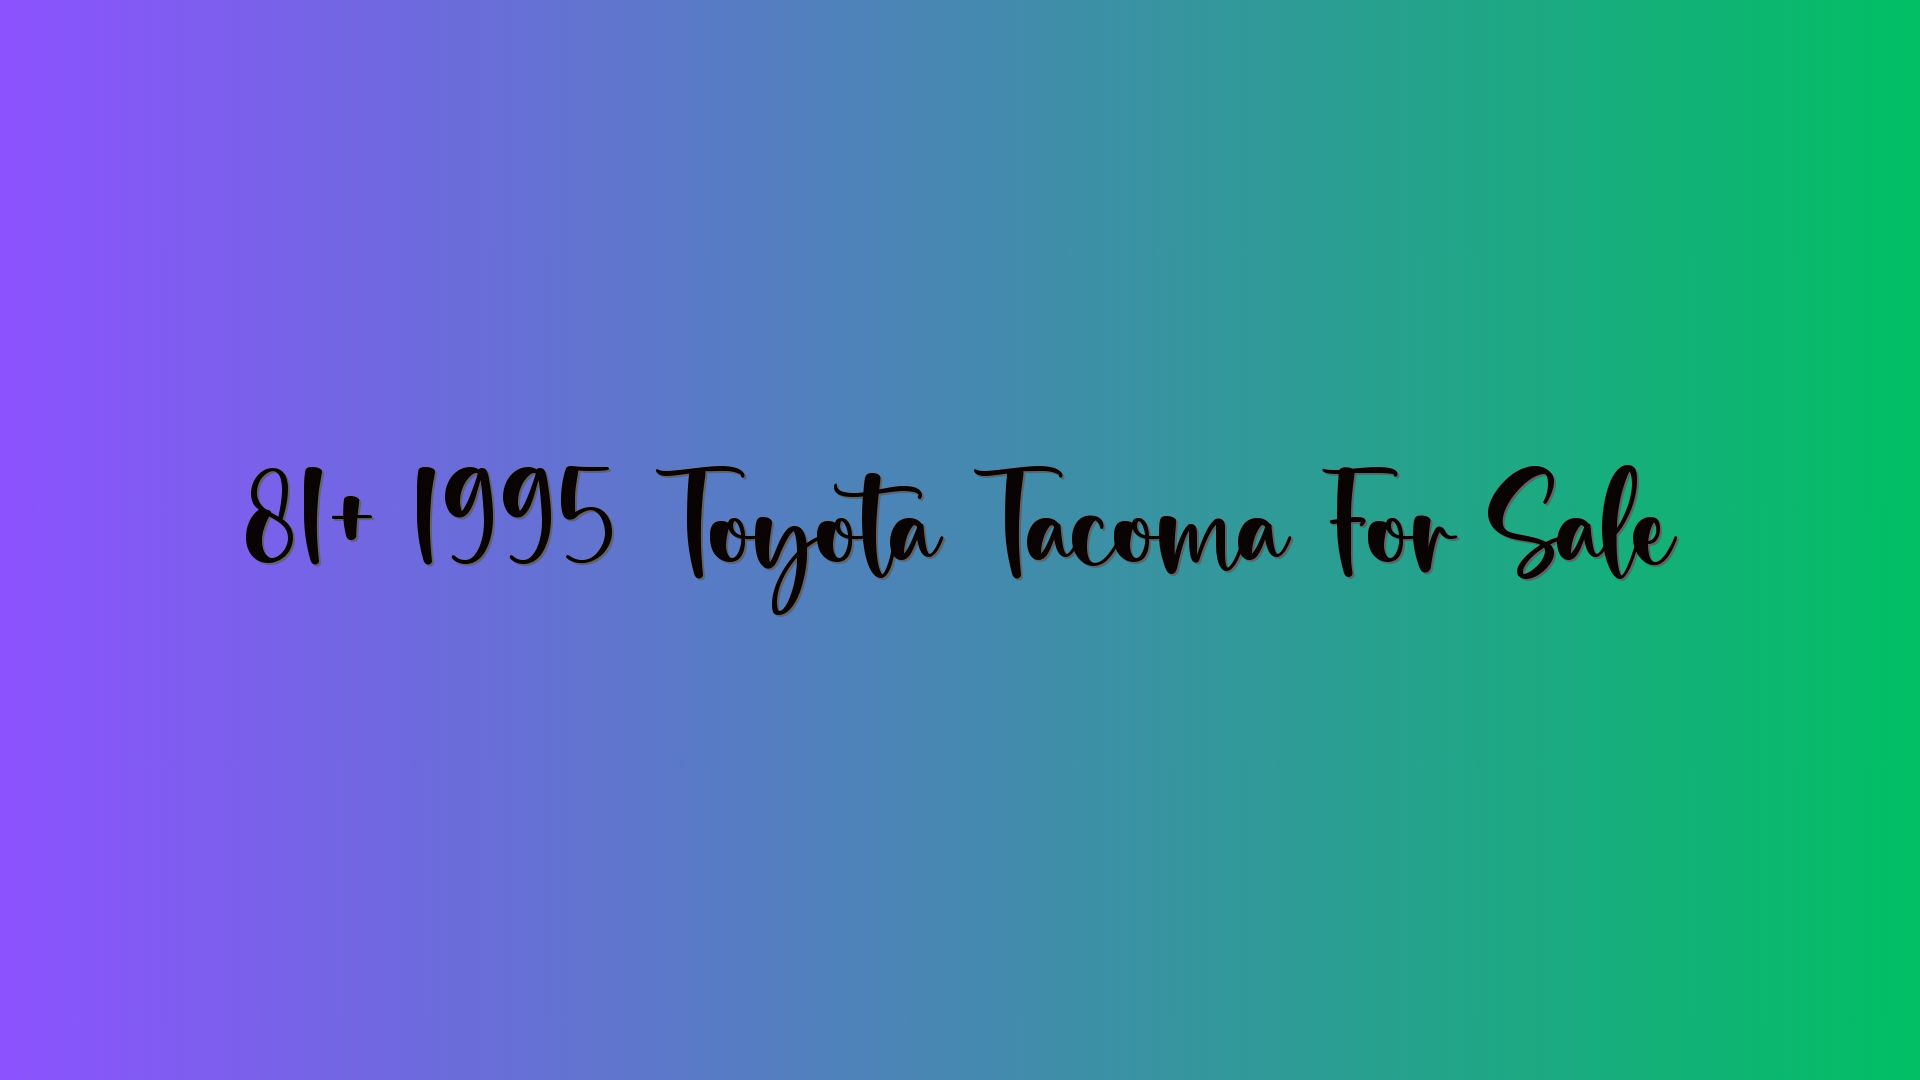 81+ 1995 Toyota Tacoma For Sale